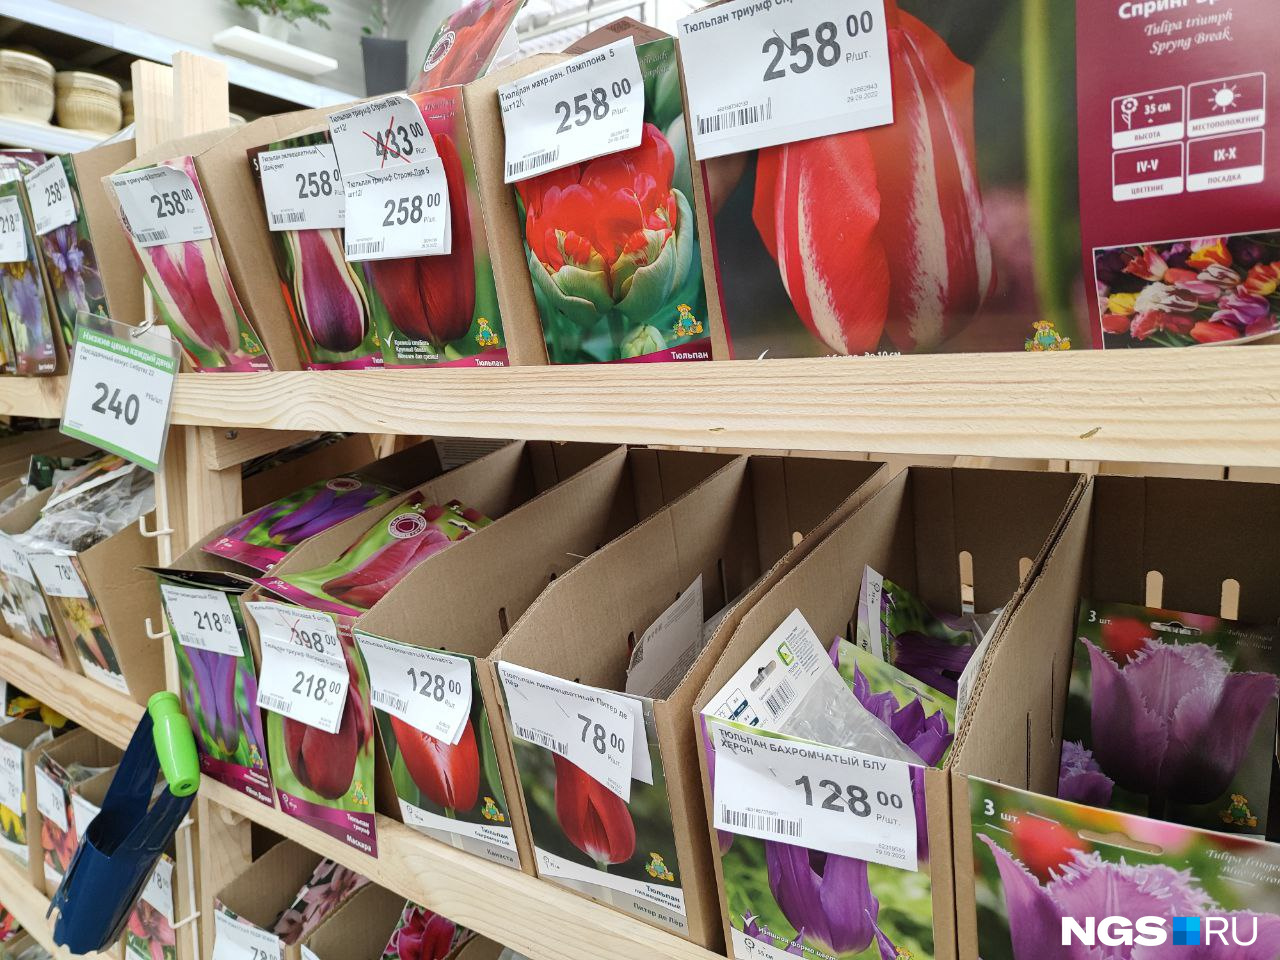 Большинство тюльпанов везут из Голландии, что приводит к росту цен